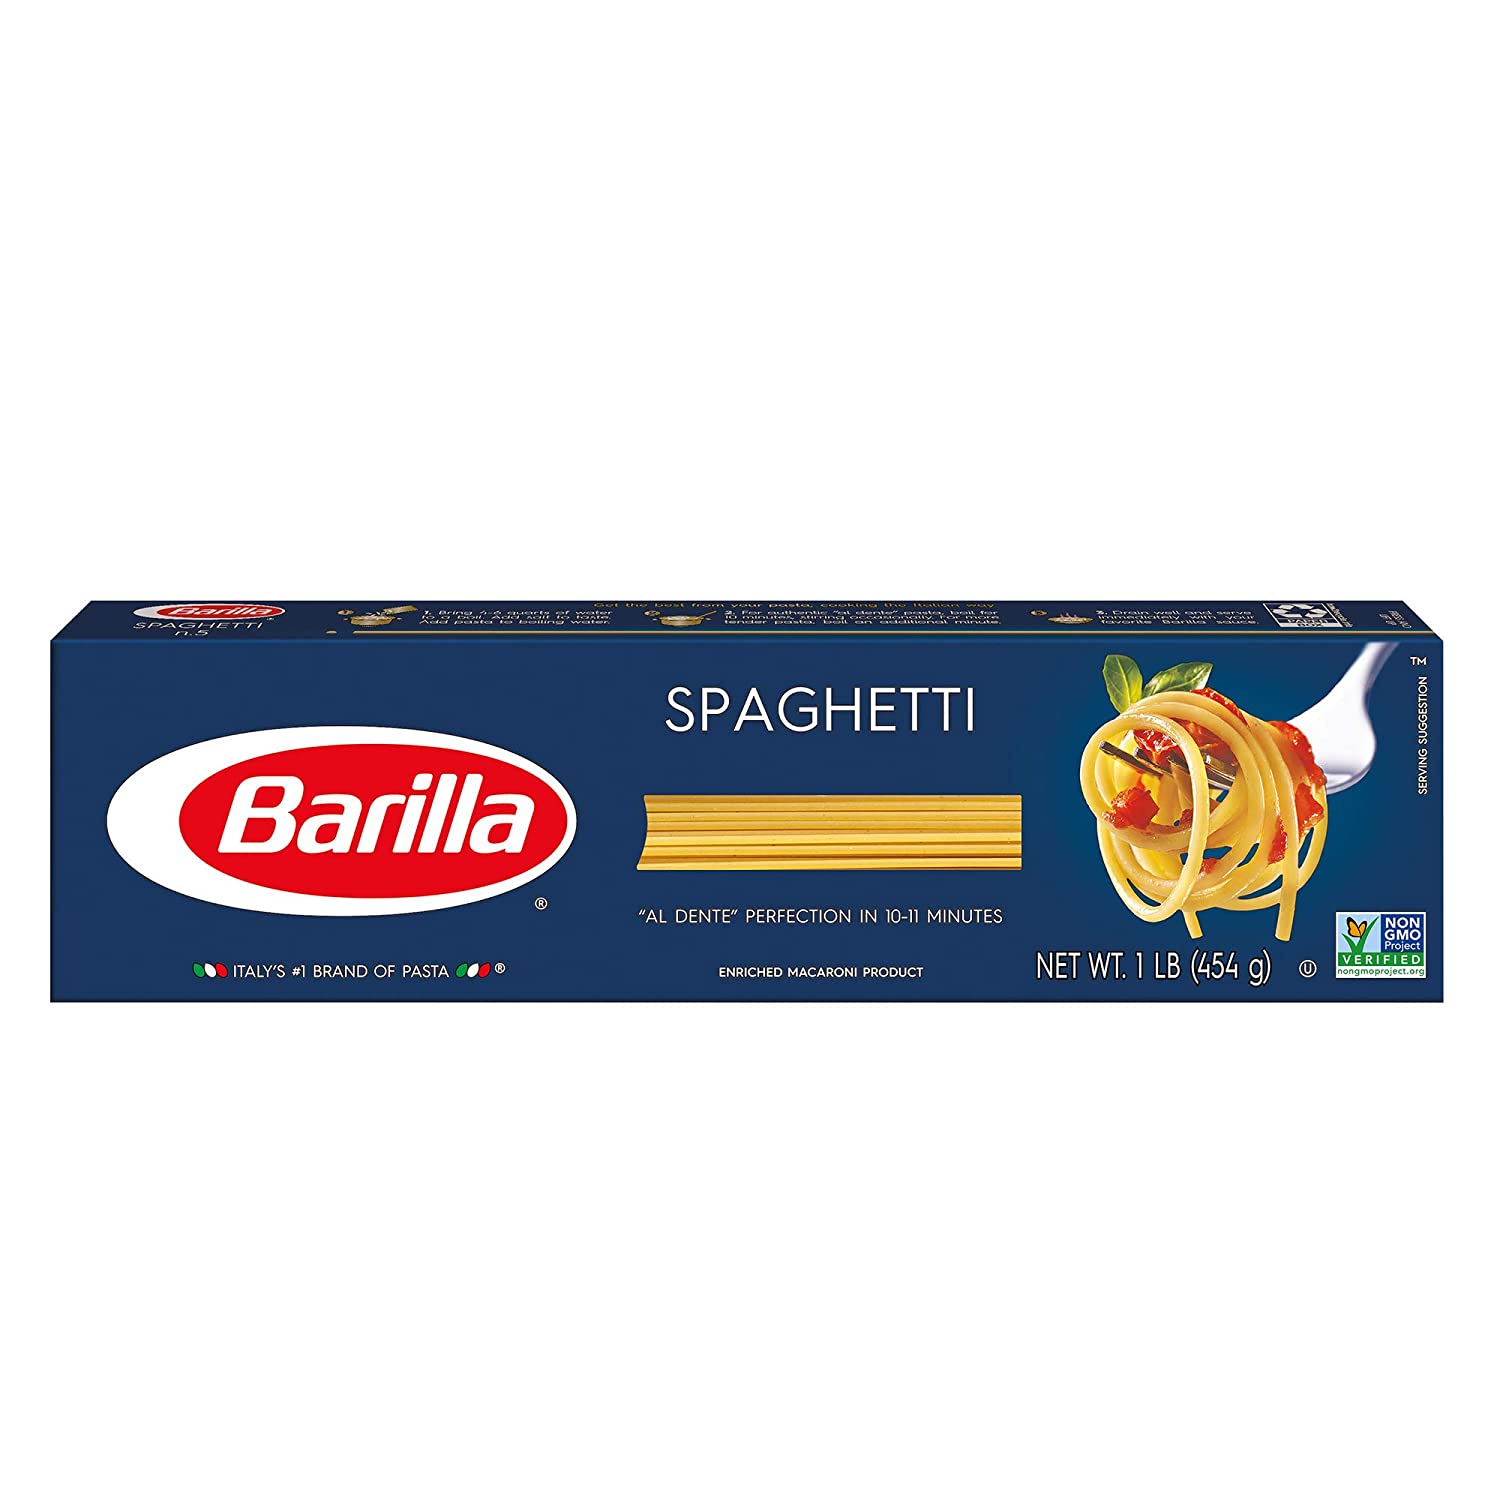 BARILLA Blue Box Spaghetti Pasta, 16 oz. Boxes (Pack of 8) $7.6 Amazon S&S